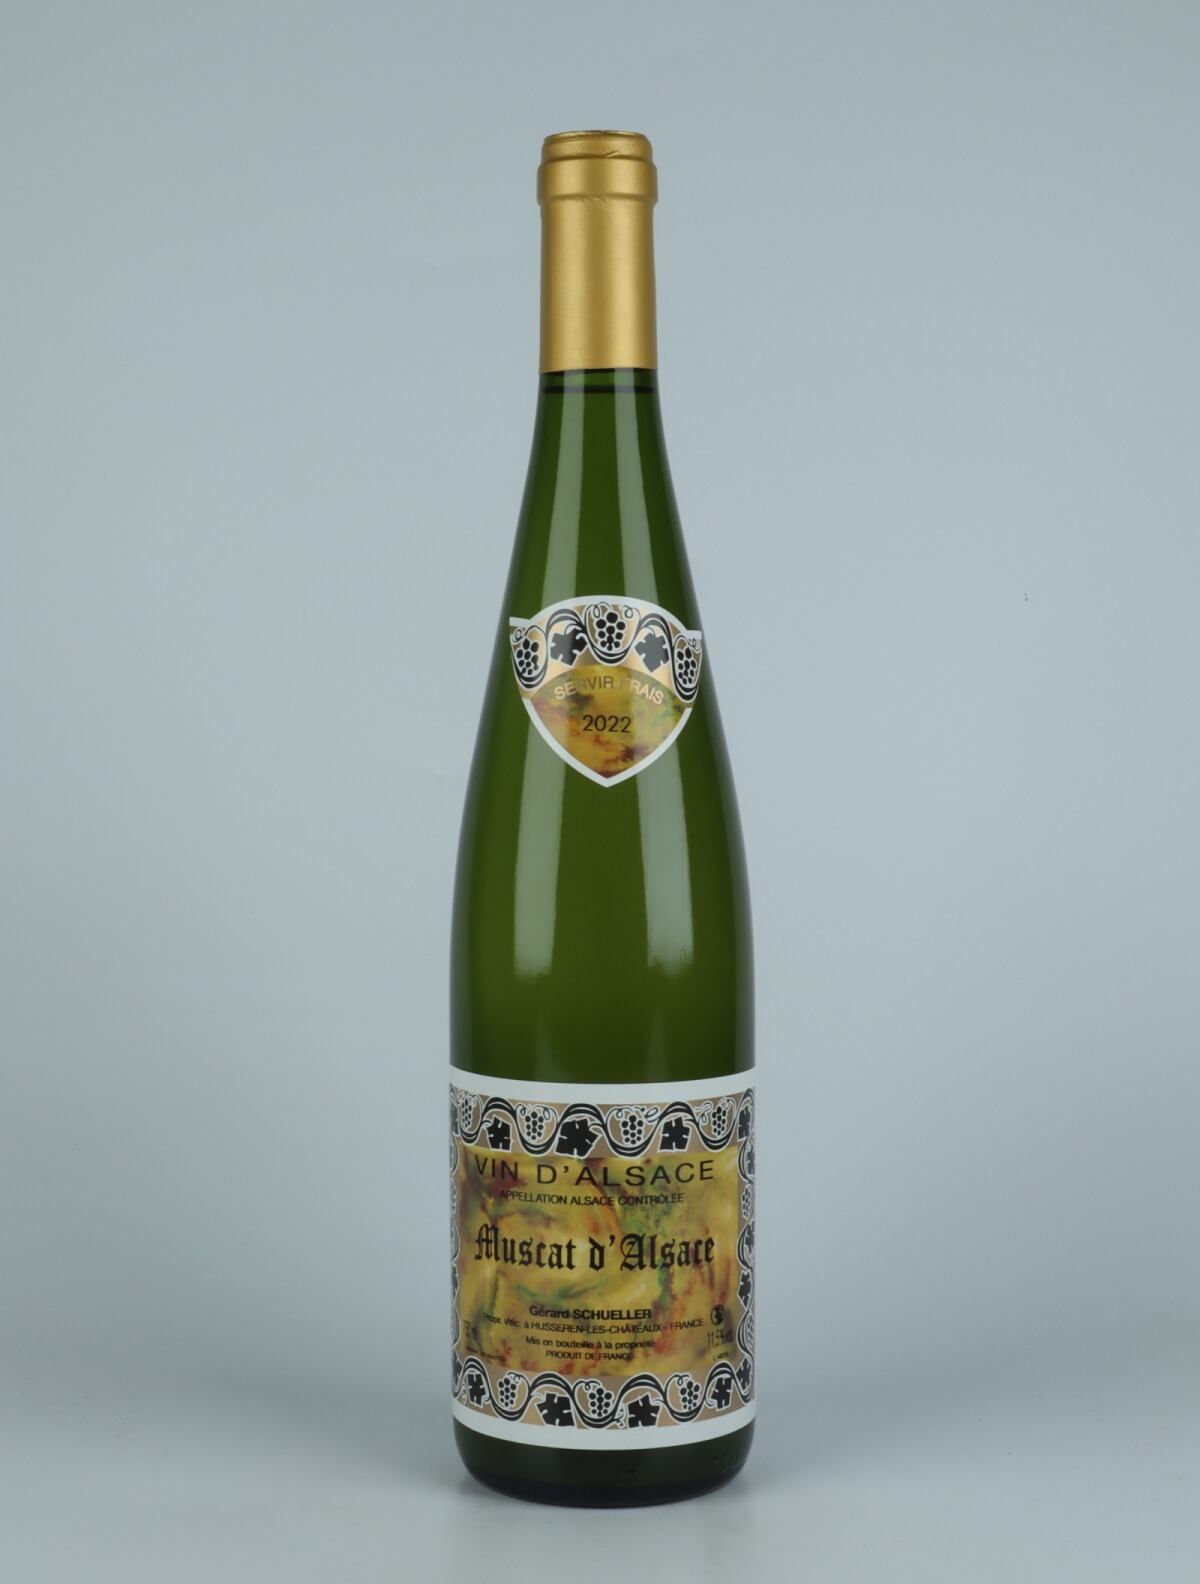 En flaske 2022 Muscat d'Alsace Hvidvin fra Gérard Schueller, Alsace i Frankrig